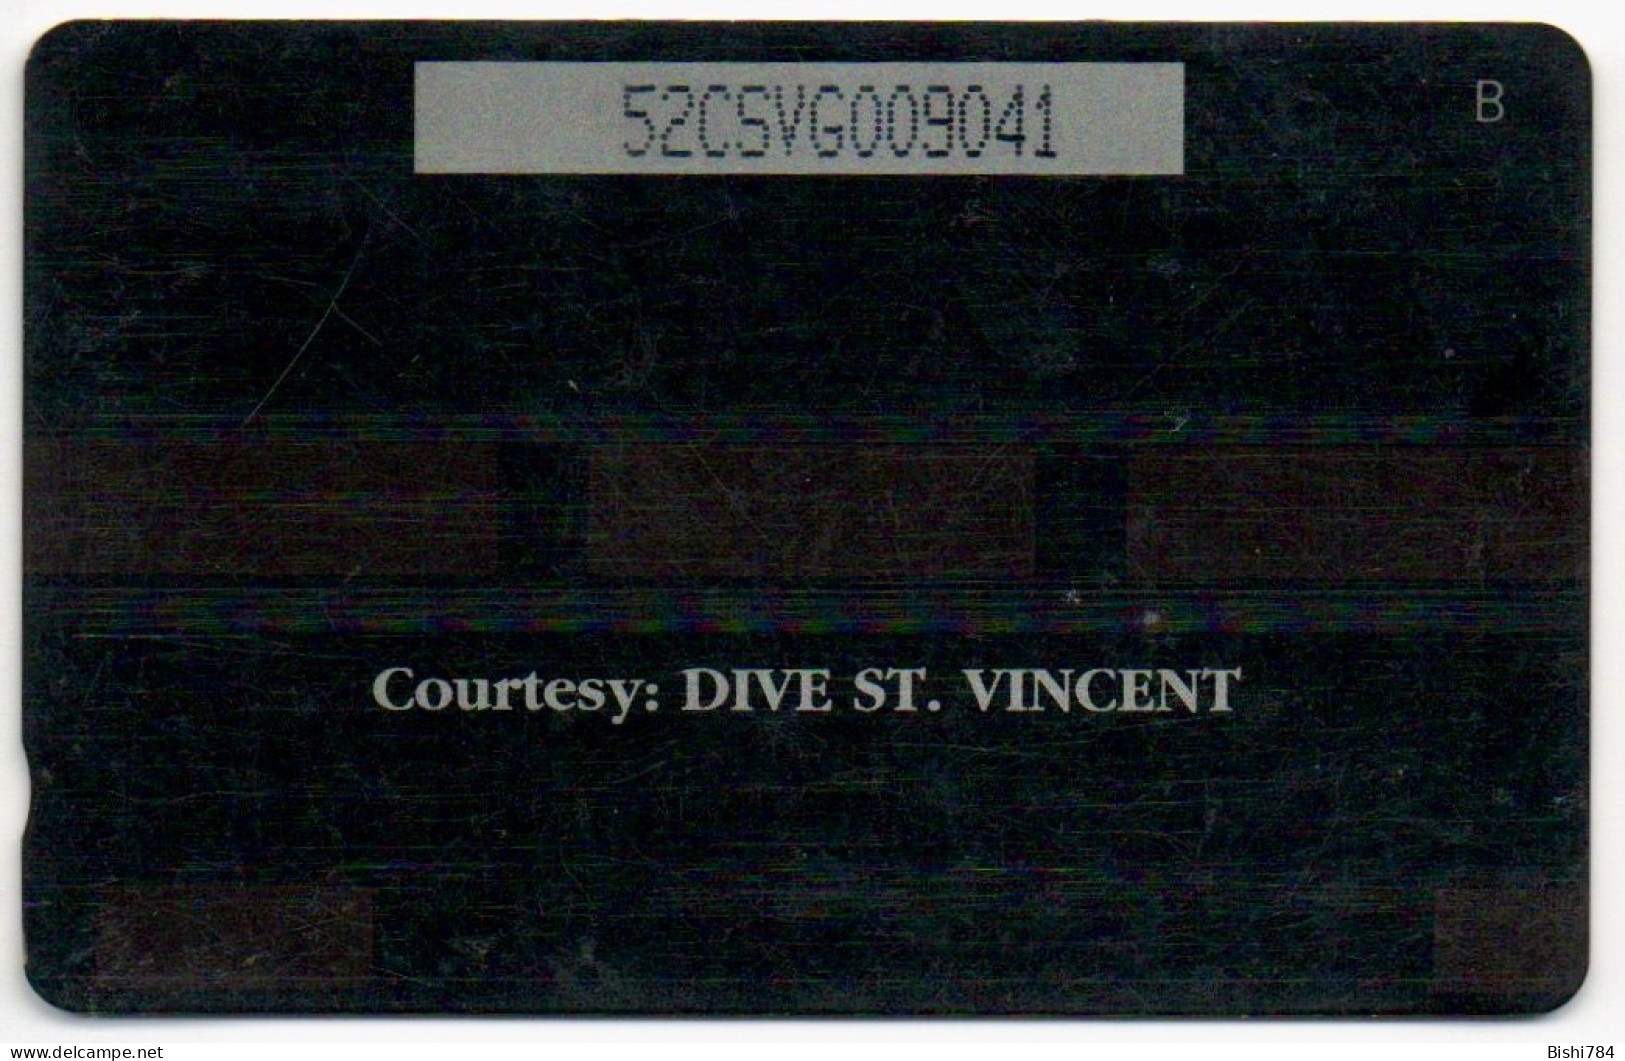 St. Vincent & The Grenadines - Giant Sea Anemone - 52CSVG - Saint-Vincent-et-les-Grenadines